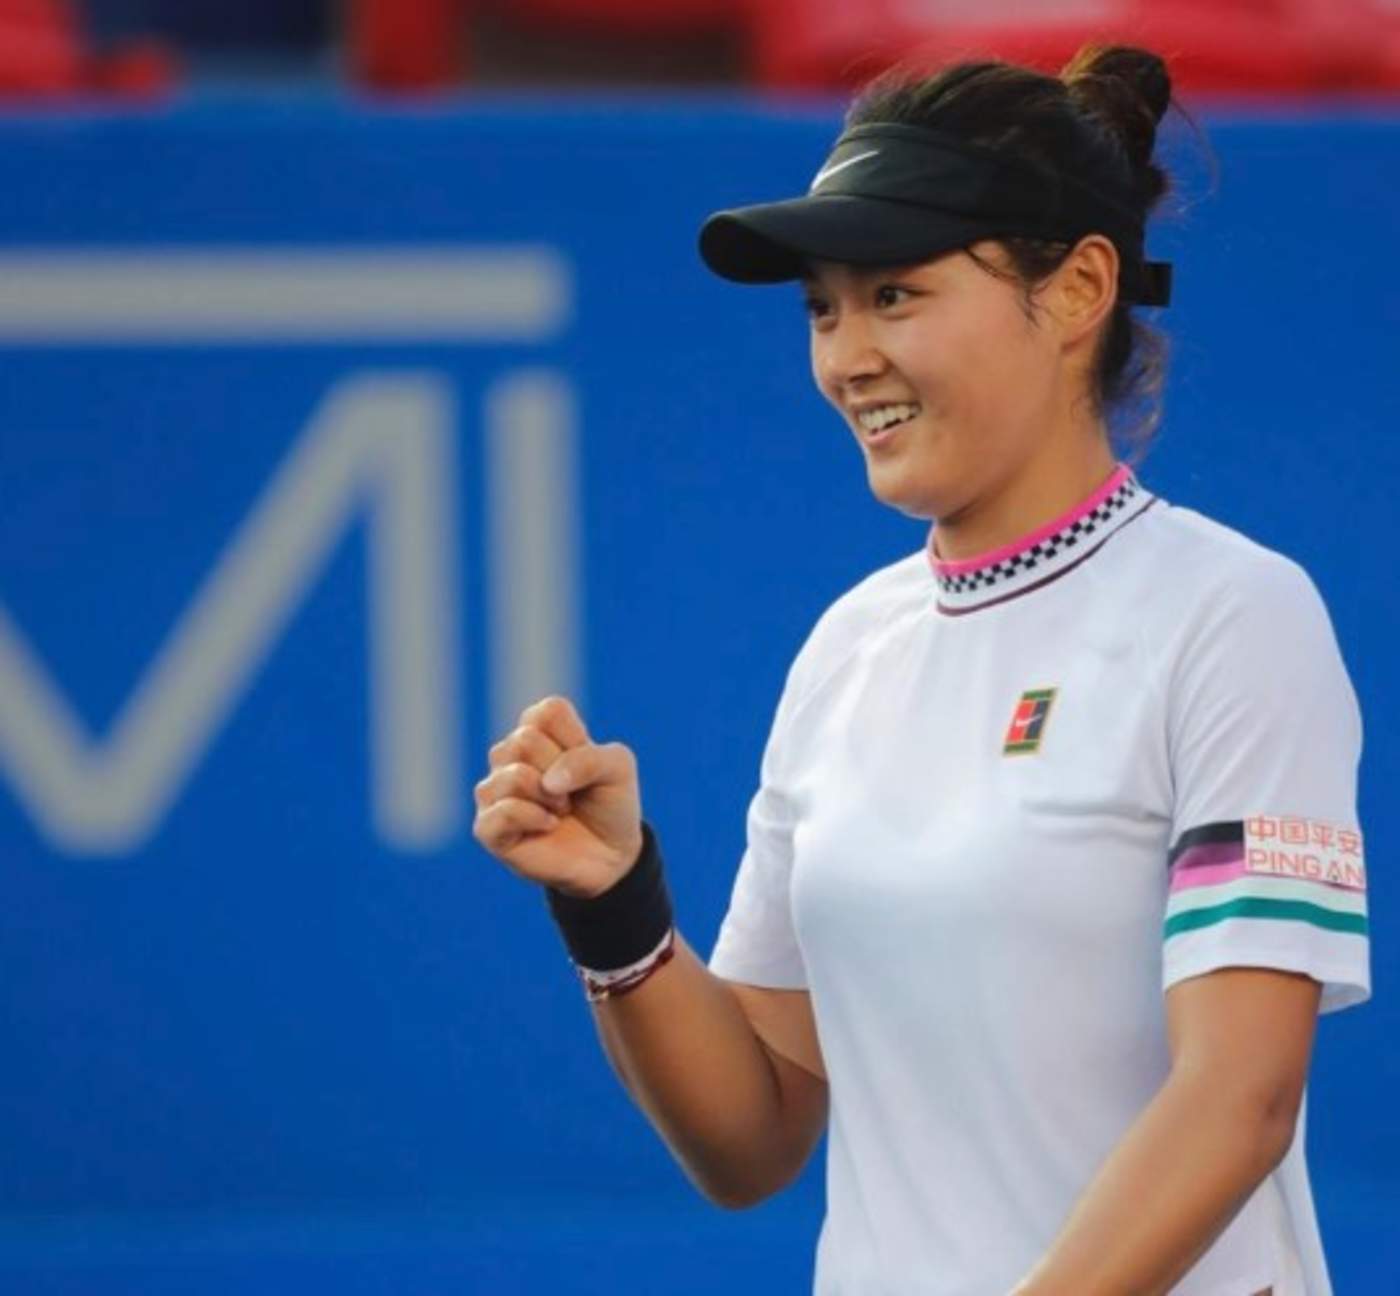 Wang obtuvo su primer título profesional al terminar con 2-6,6-3 y 7-5 sobre la estadounidense Sofia Kenin. (ESPECIAL)